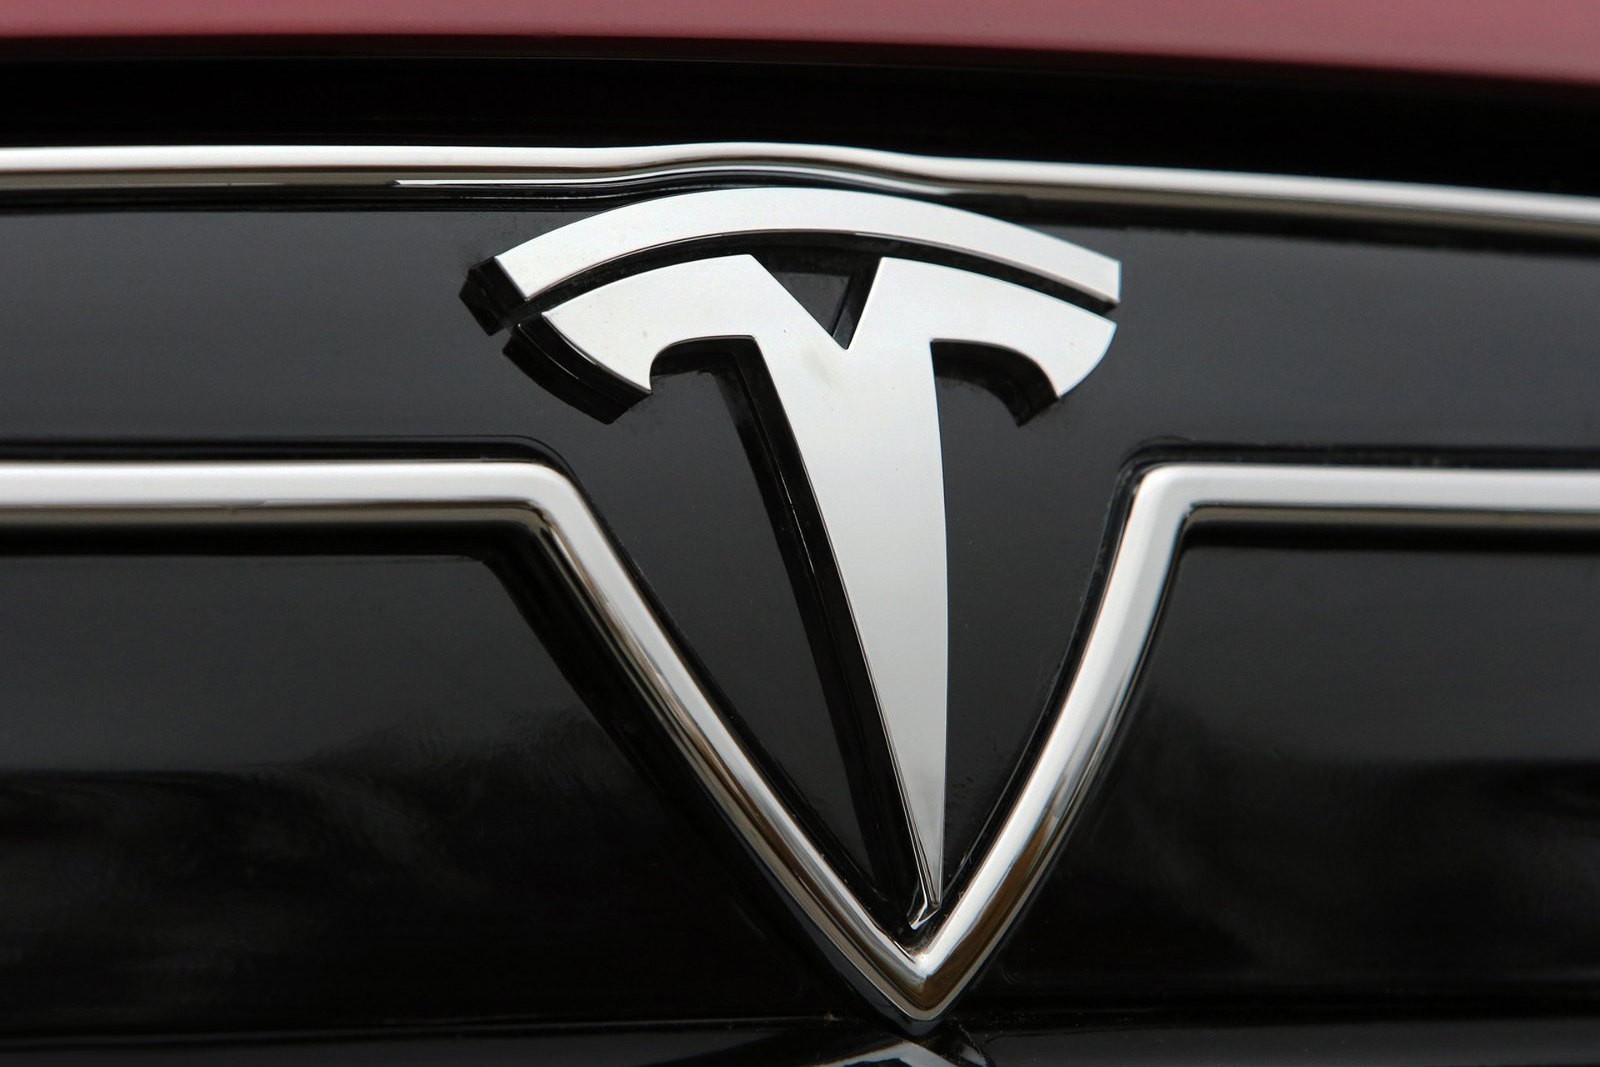 Очередные проблемы с автомобилями Tesla - экран гаснет сам по себе